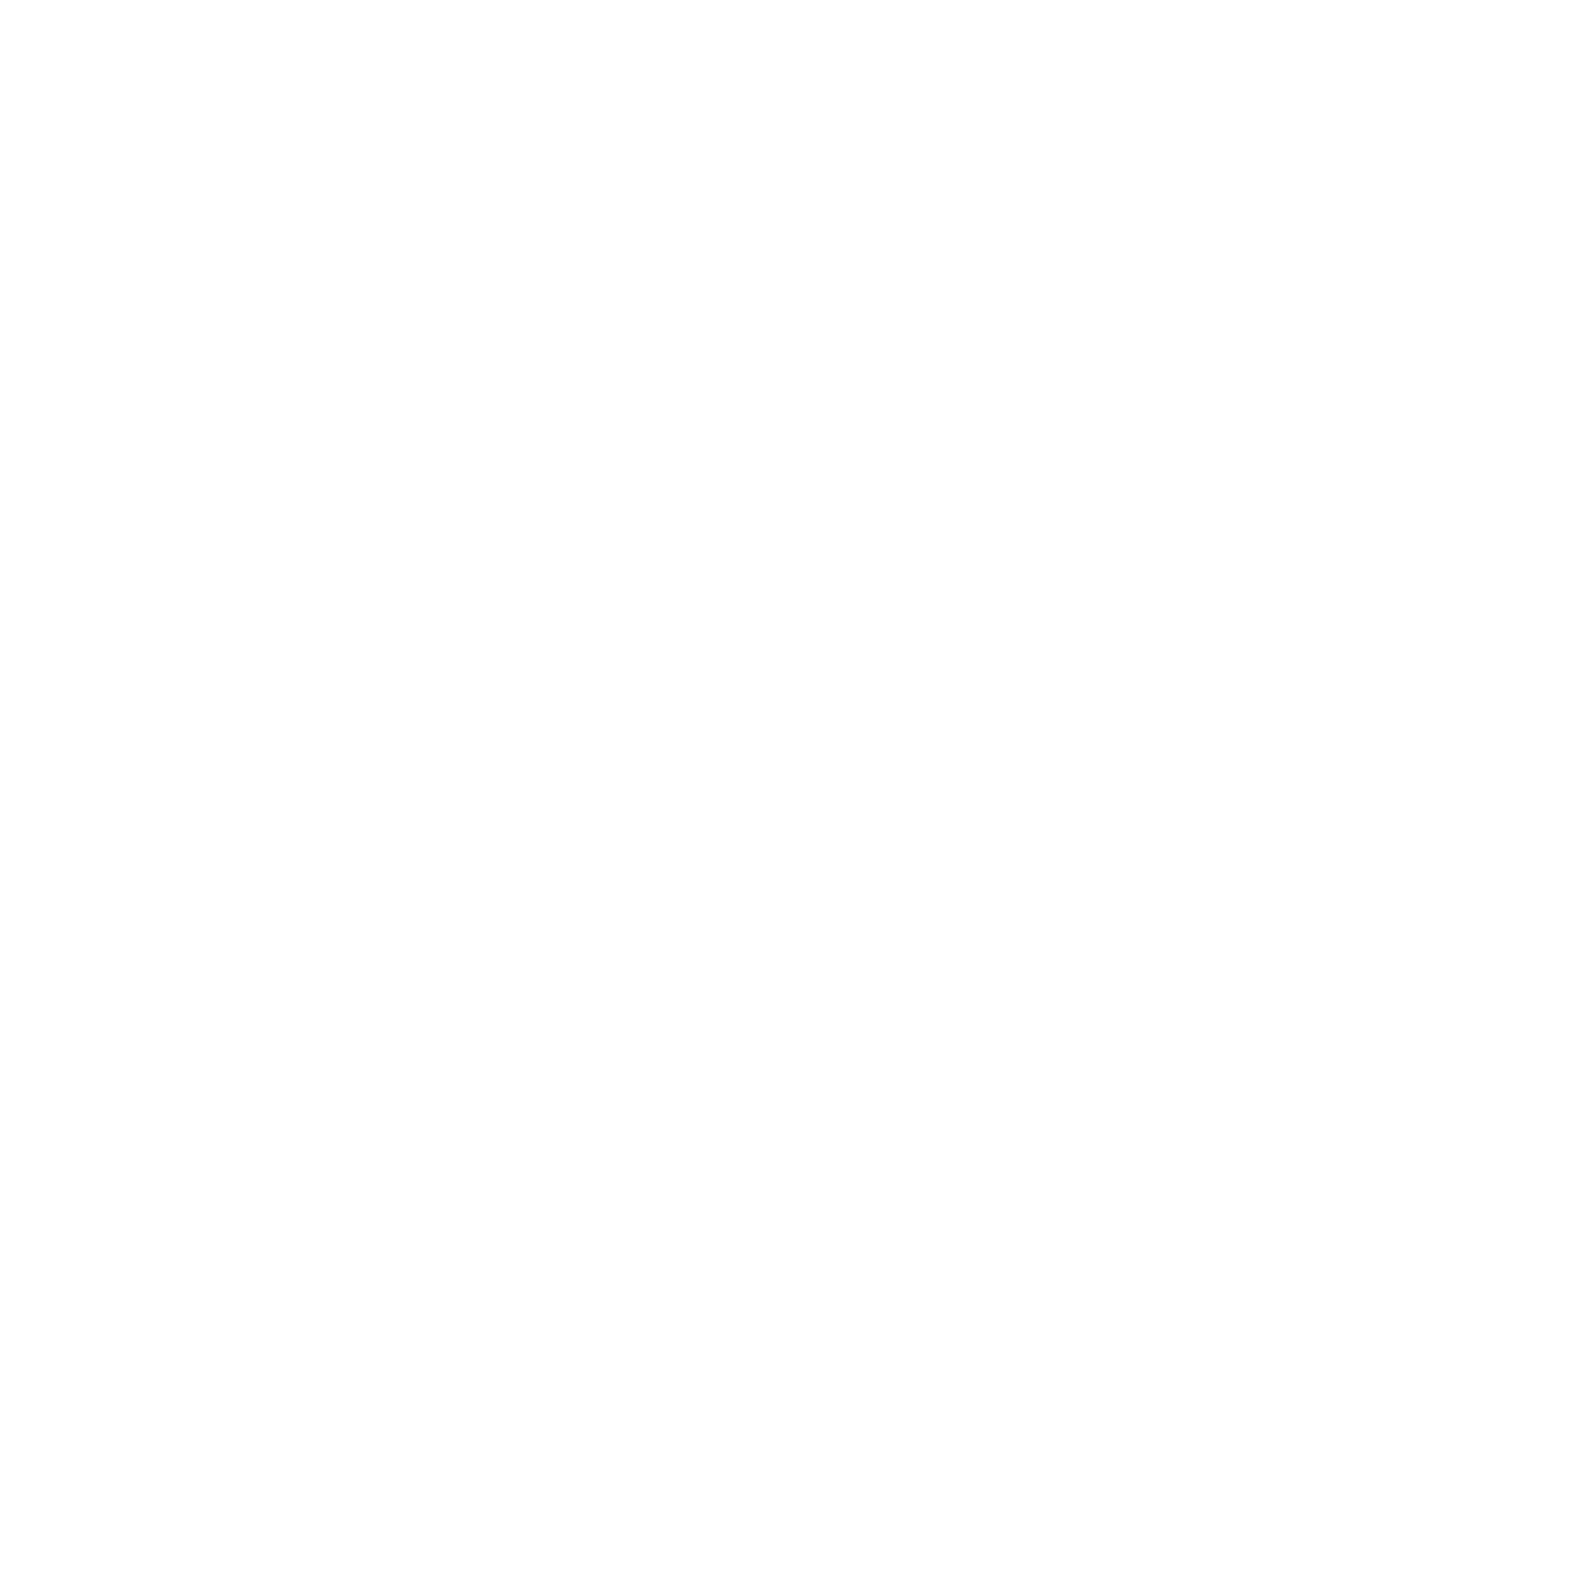 OneSpaWorld logo for dark backgrounds (transparent PNG)